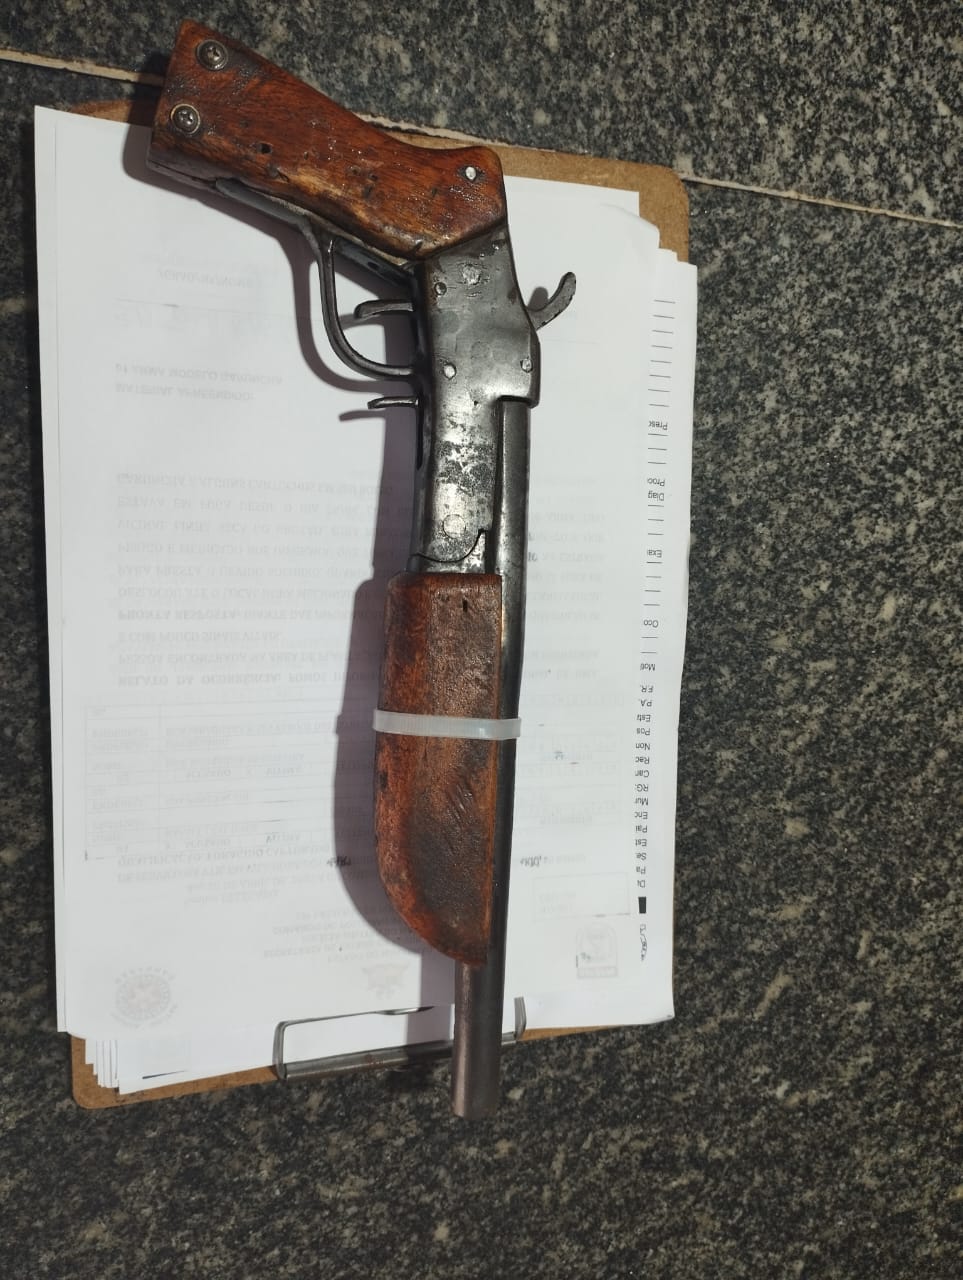  Arma utilizada no crime ocorrido em São Miguel do Tocantins /Foto: Divulgação PCTO